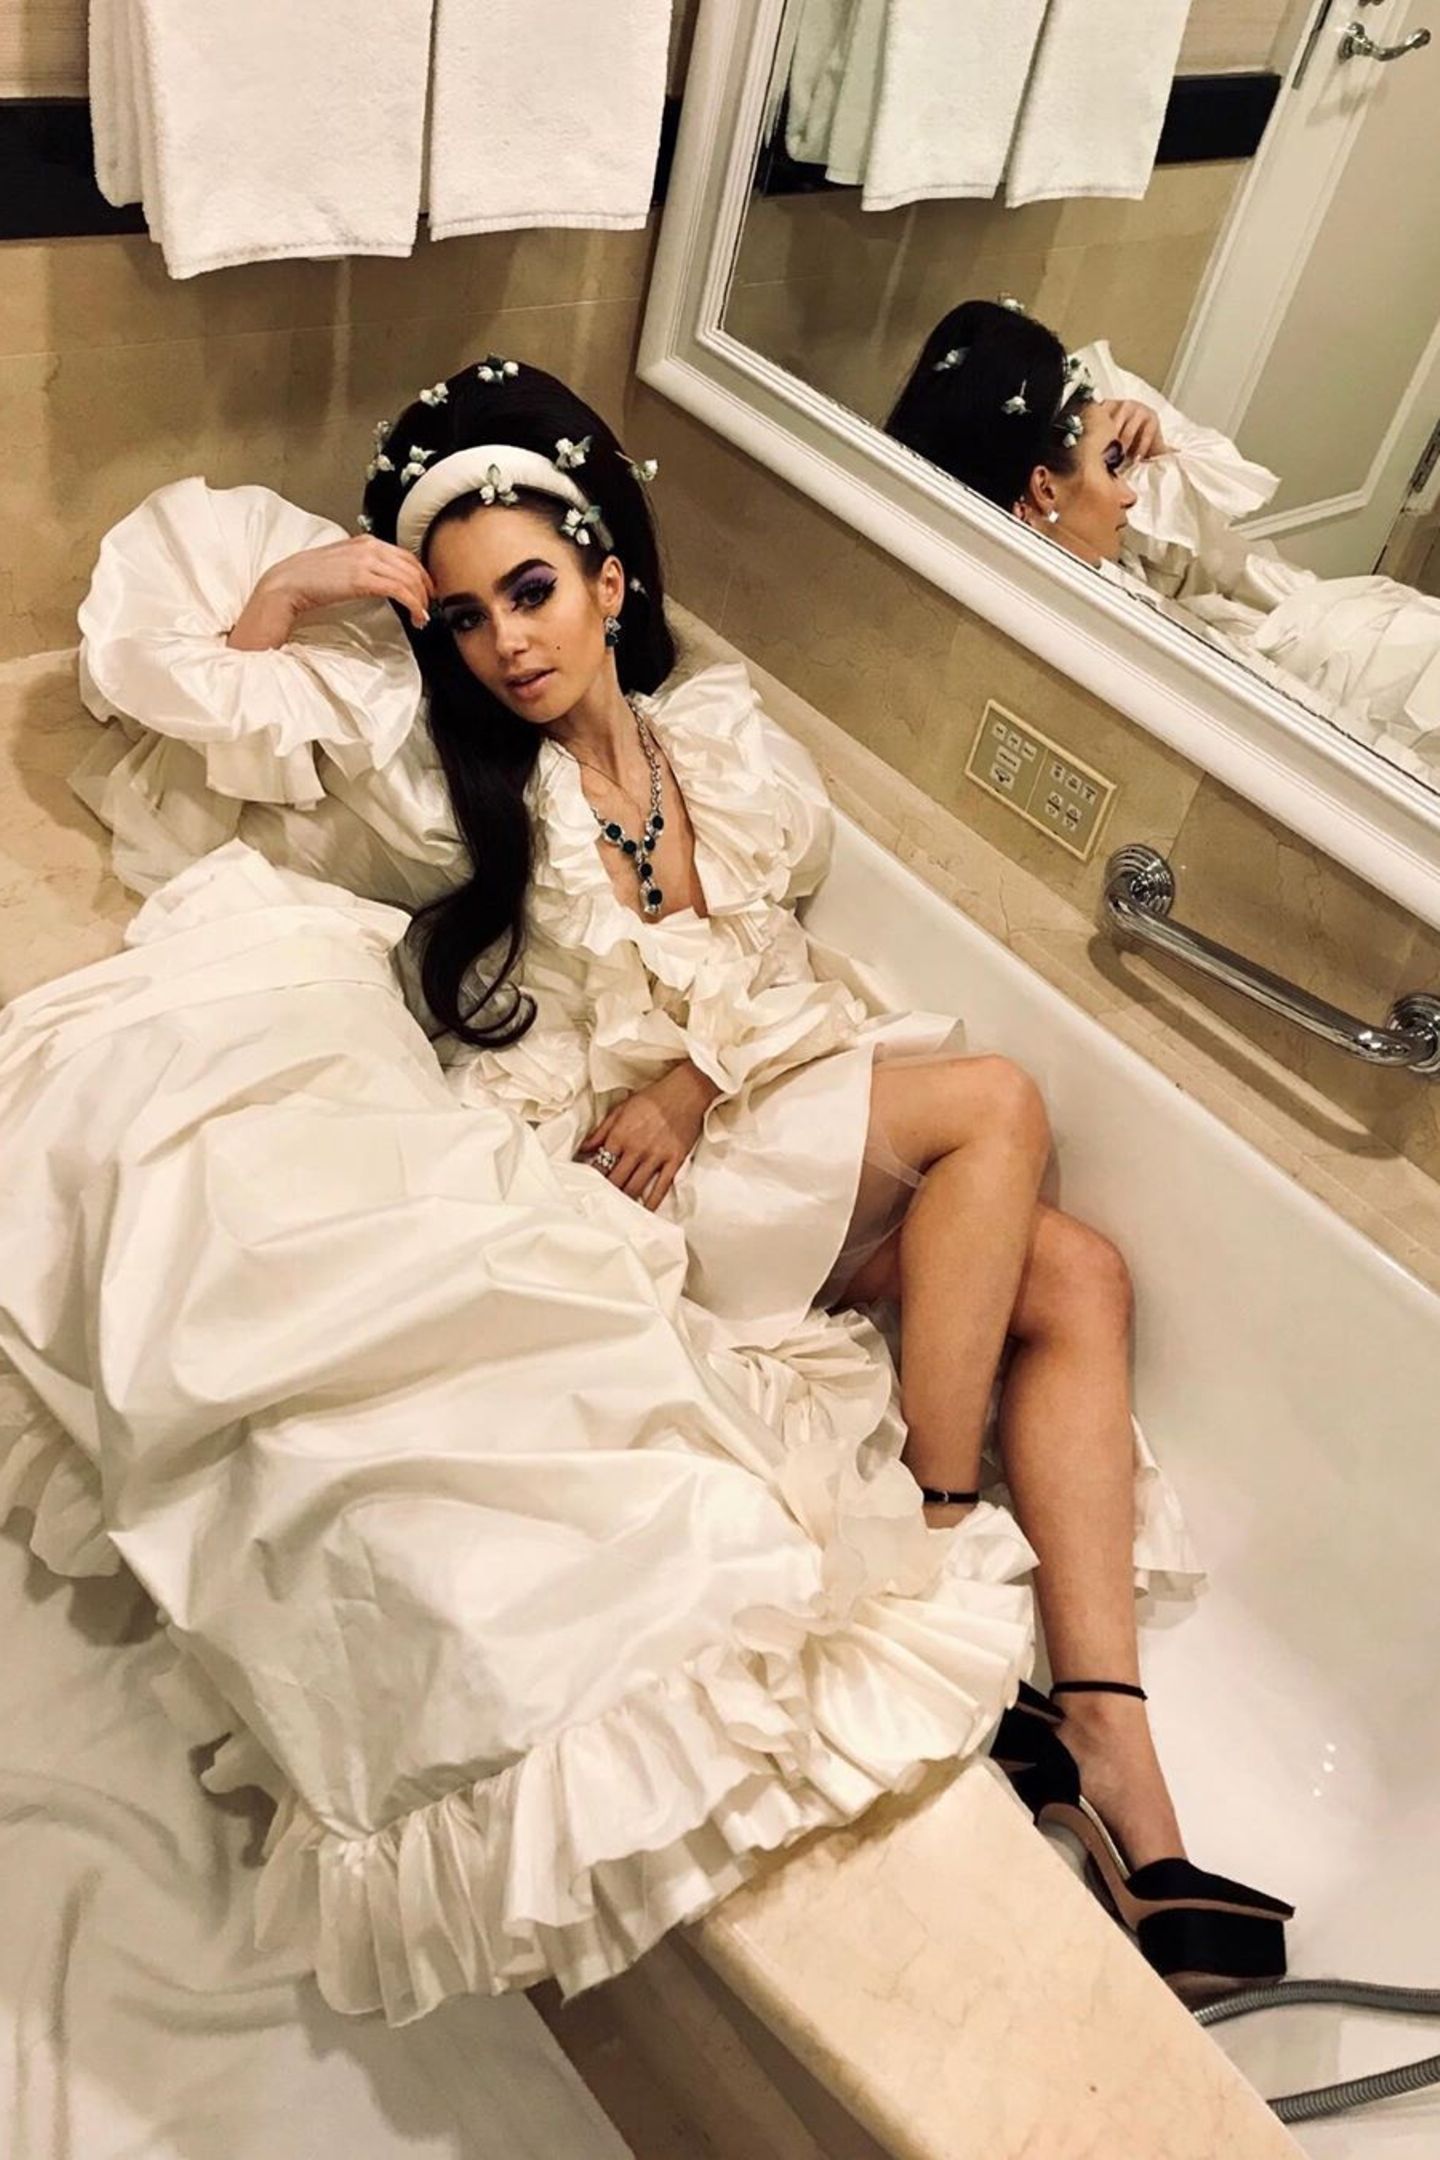 "Wieder das Dilemma... After-Show-Party oder ein Bad?", fragt Lily Collins ihre Follower auf Instagram. Dazu postet die Schauspielerin ein Foto, auf dem sie in ihrer opulenten Robe in der Badewanne liegt. 